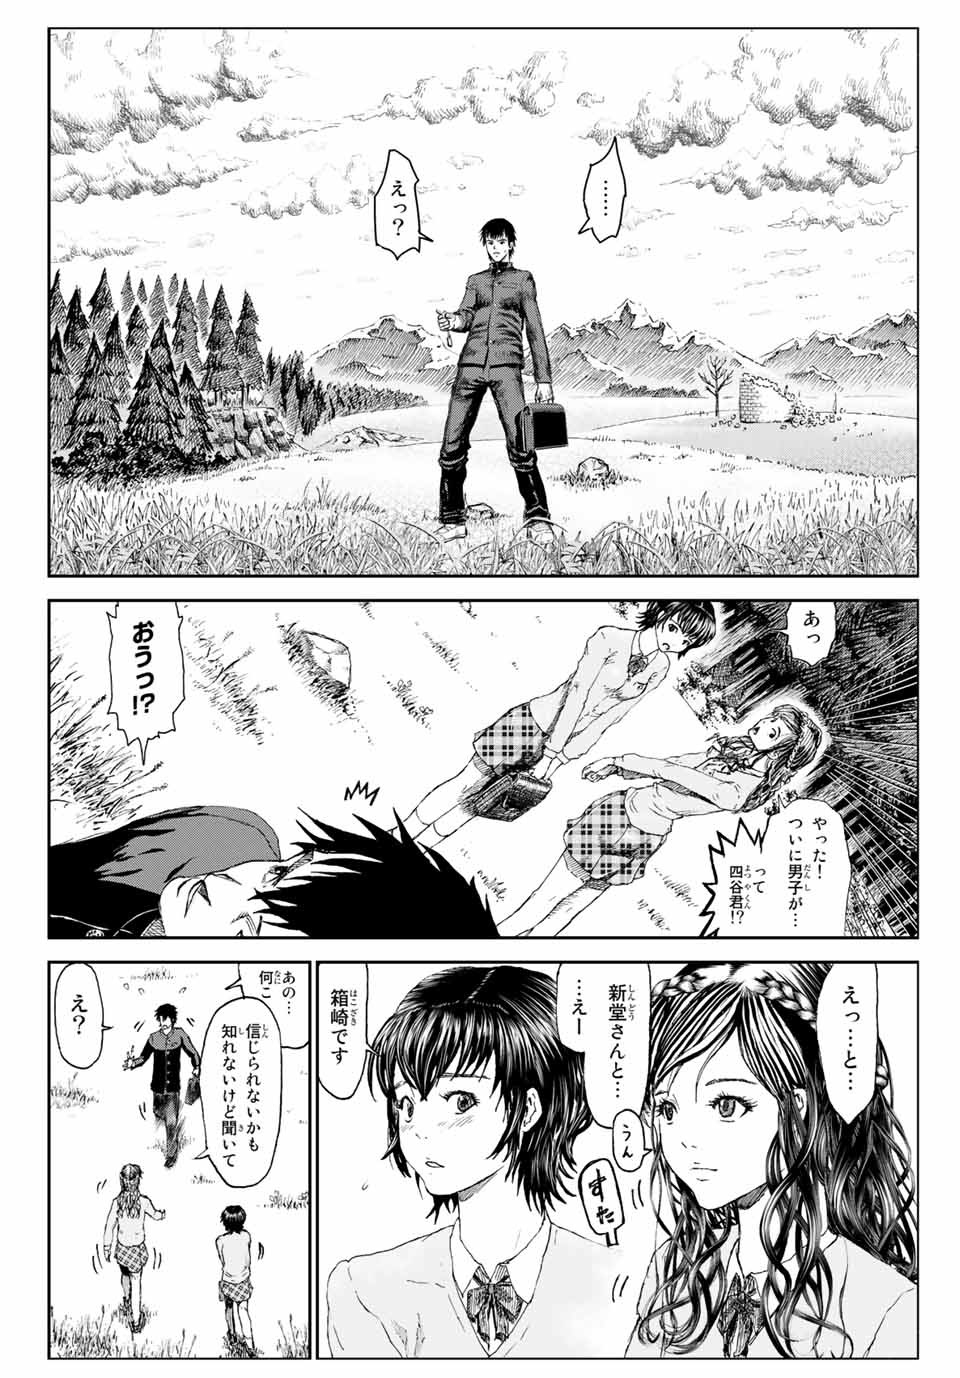 100-man no Inochi no Ue ni Ore wa Tatte Iru - Chapter 51.6 - Page 4